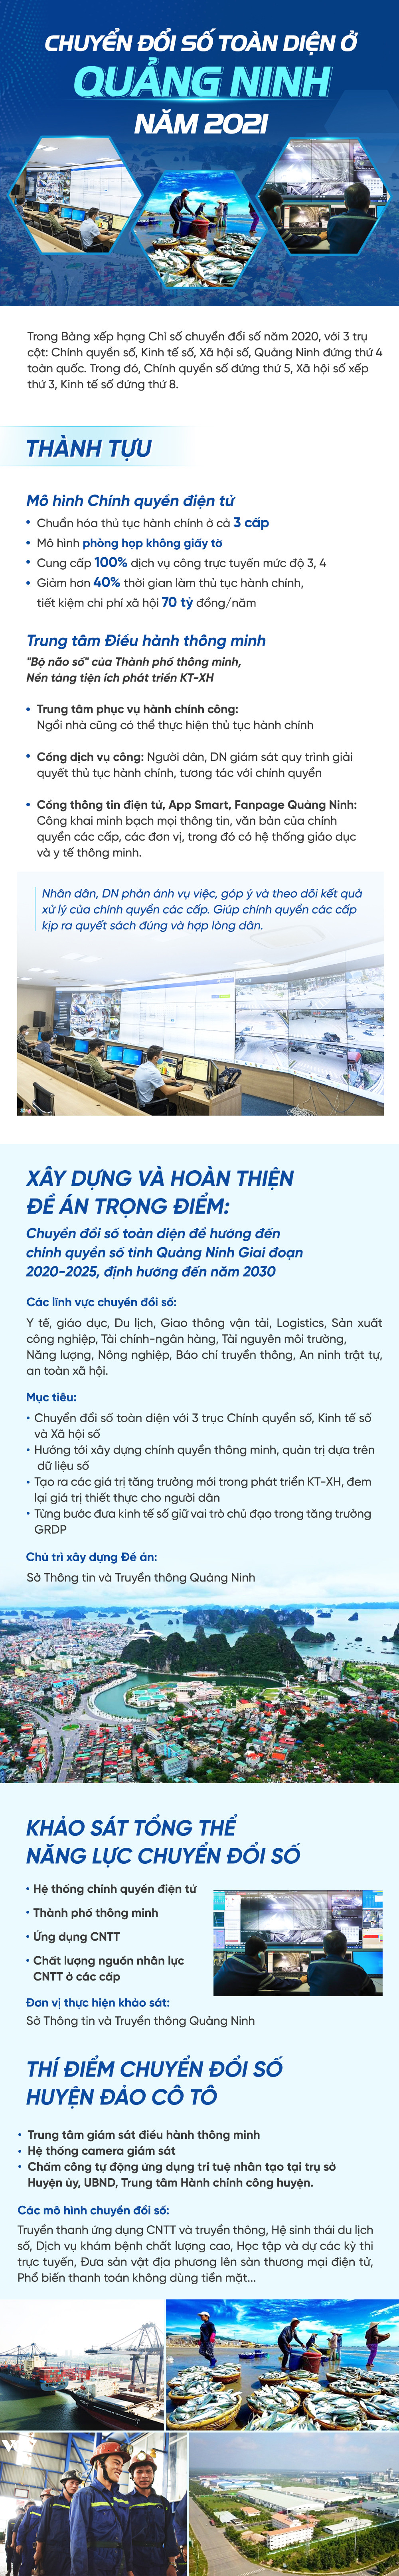 Chuyển đổi số toàn diện ở Quảng Ninh năm 2021 - Ảnh 1.